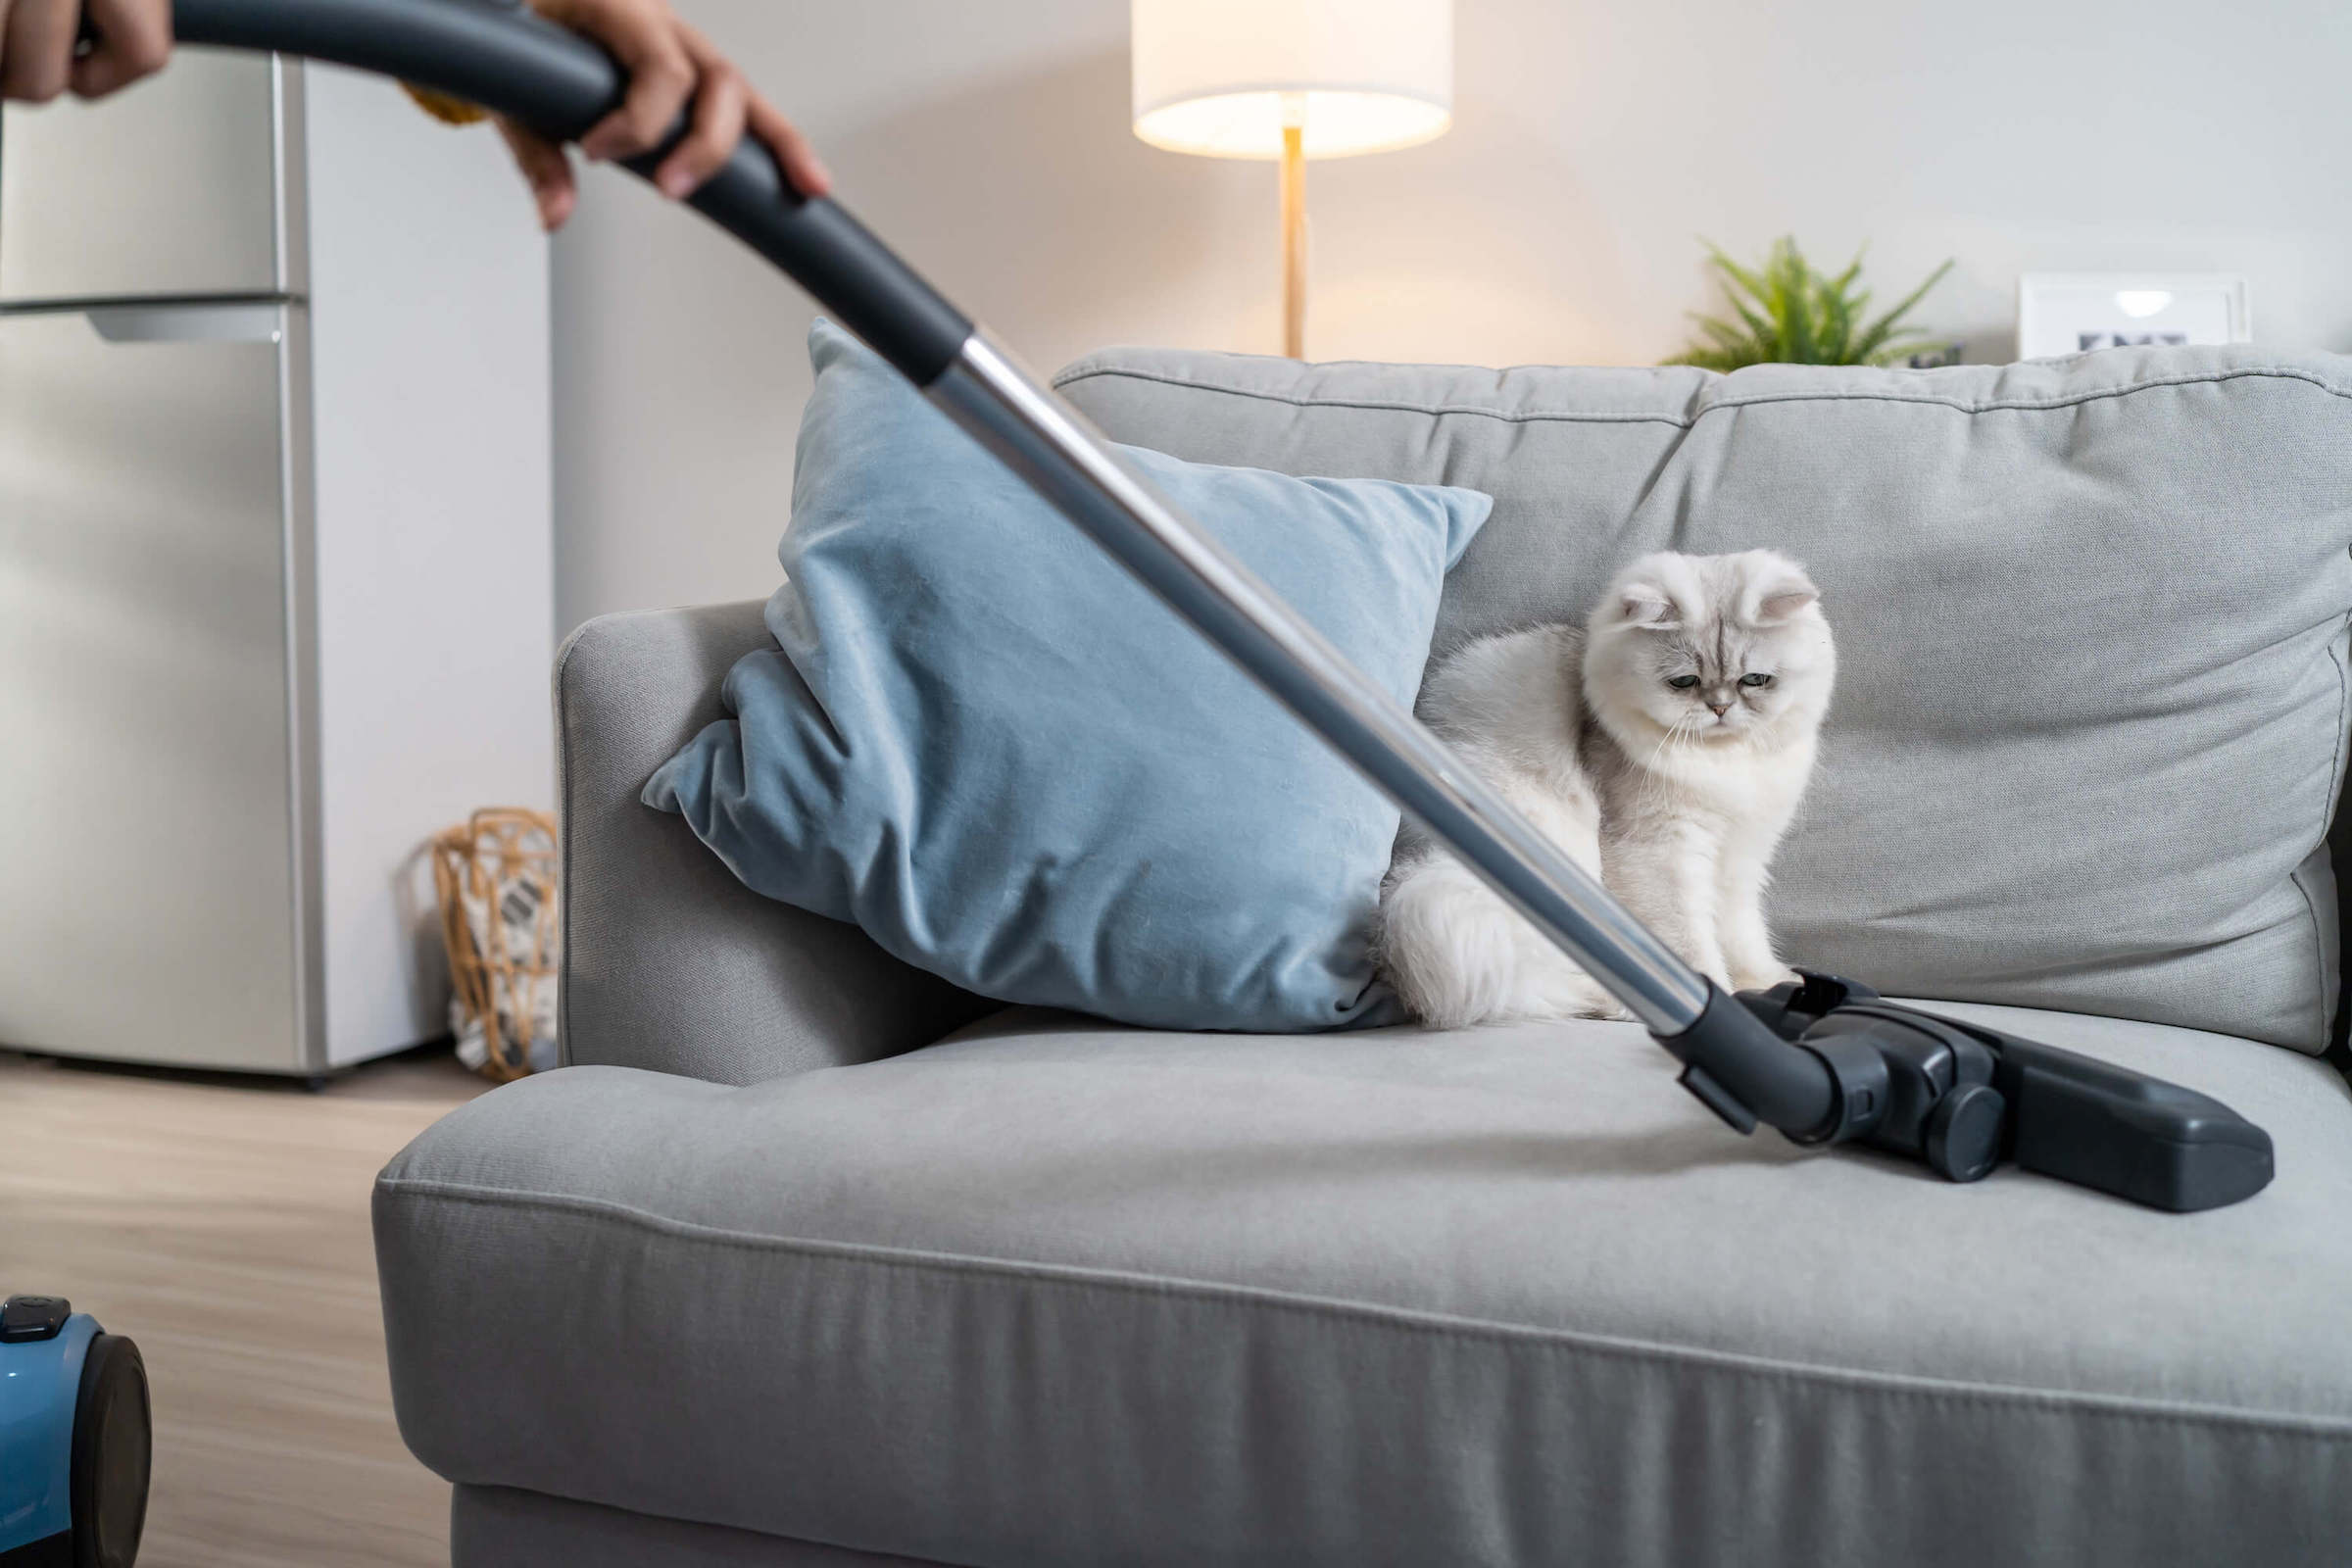 Frau verwendet Staubsauger auf einer Couch, weiße Katze sitzt daneben